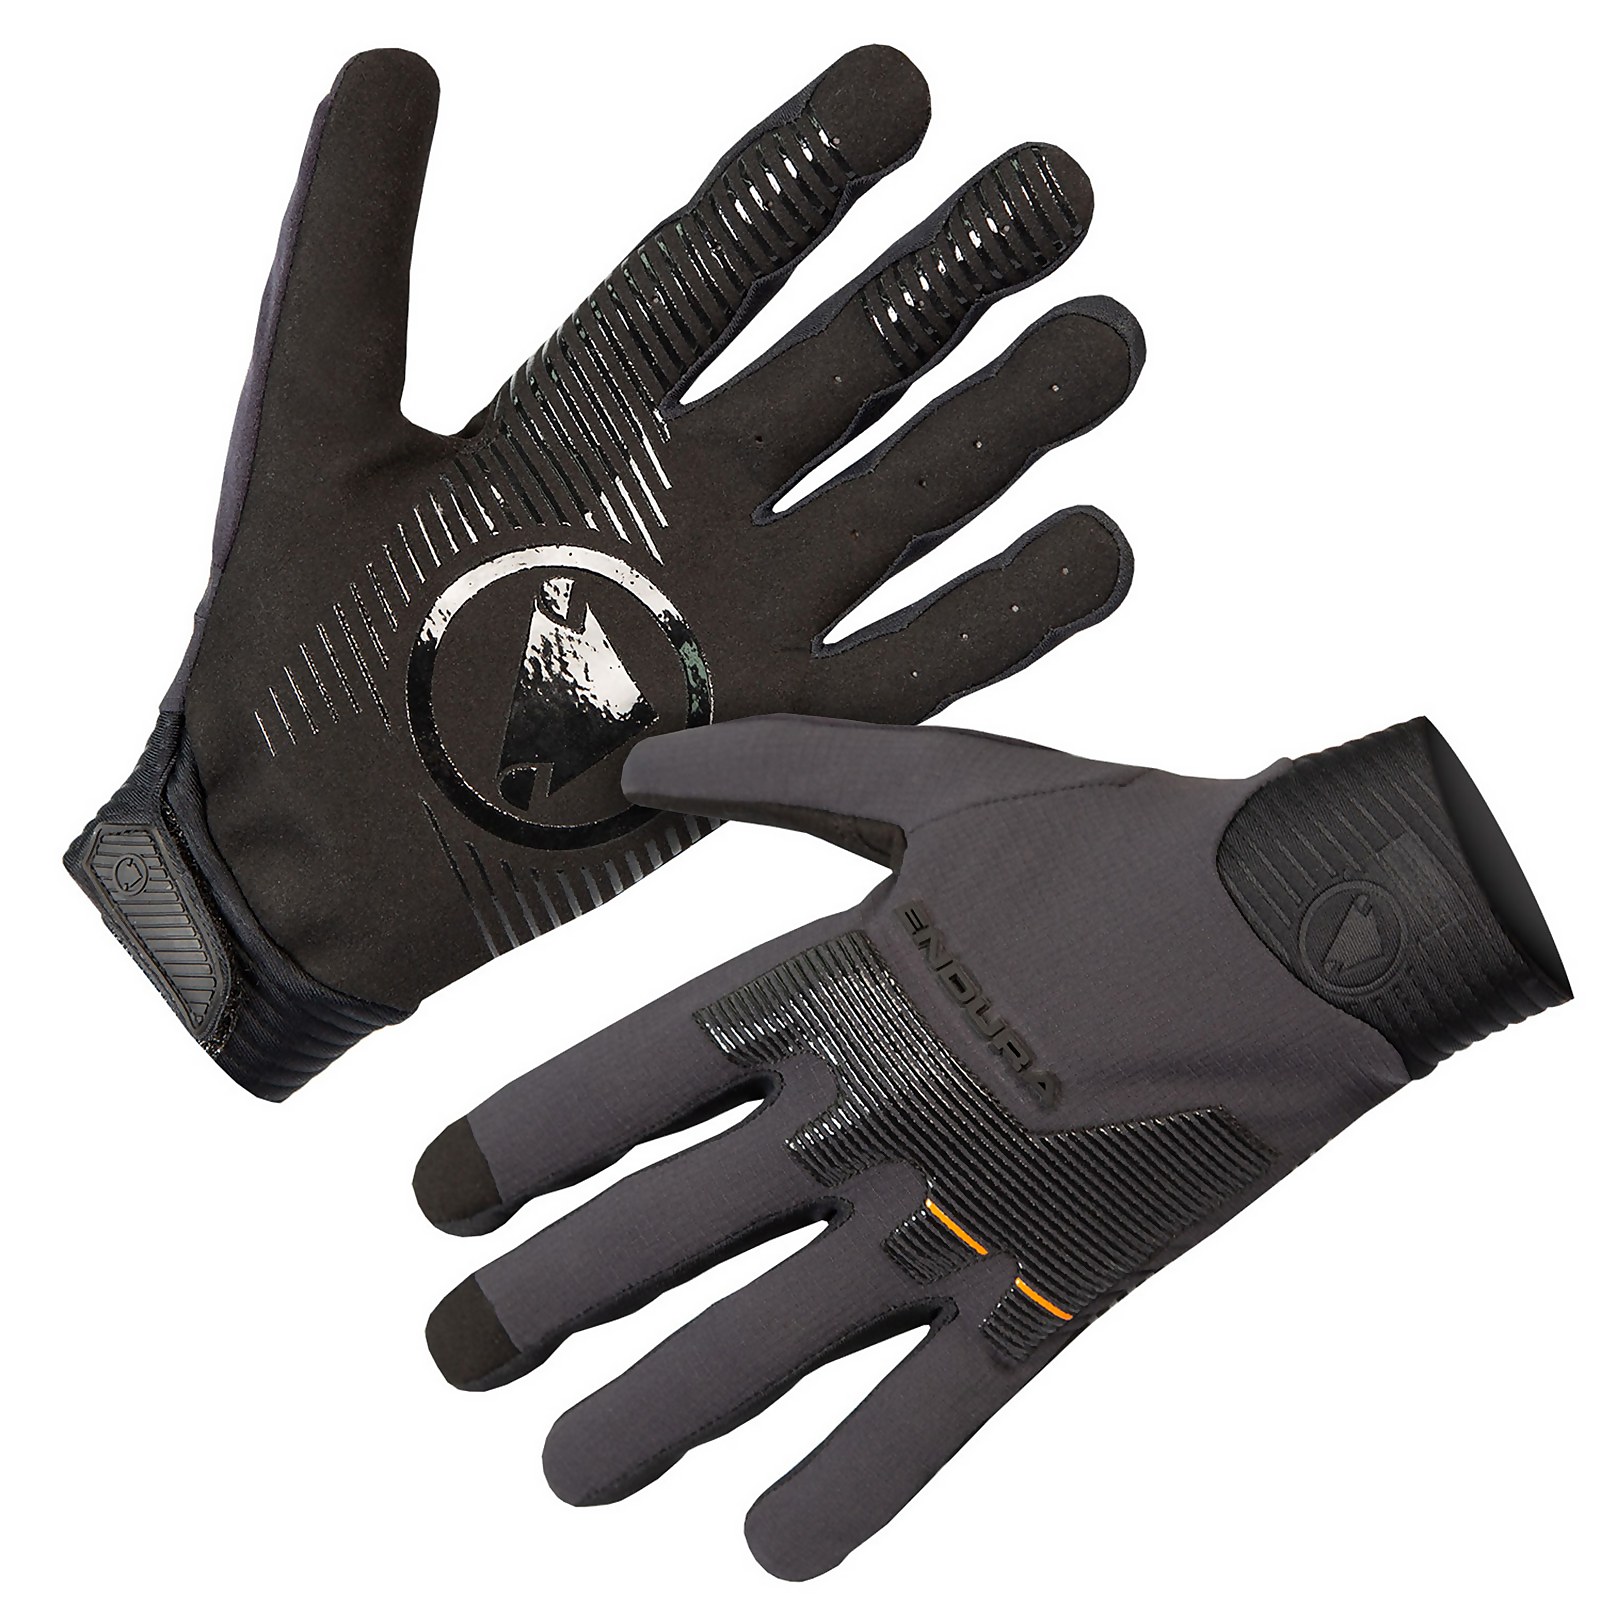 Mt500 D3o Glove - Black